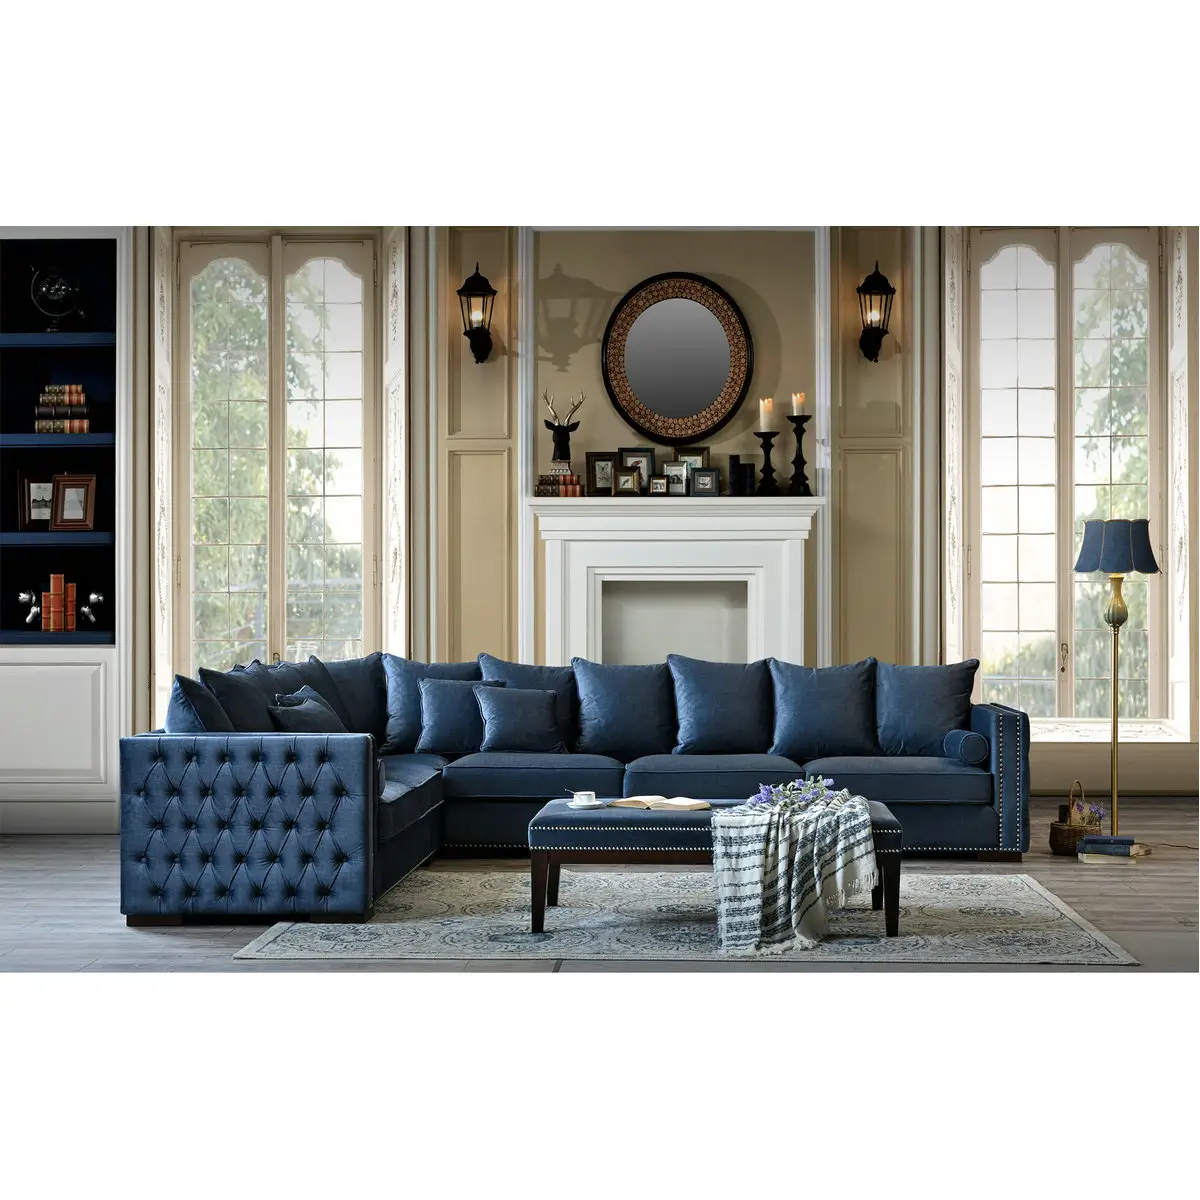 Modern tasarım kanepe lüks kanepe mobilya kumaş setleri kanepeler oturma odası kanepeleri